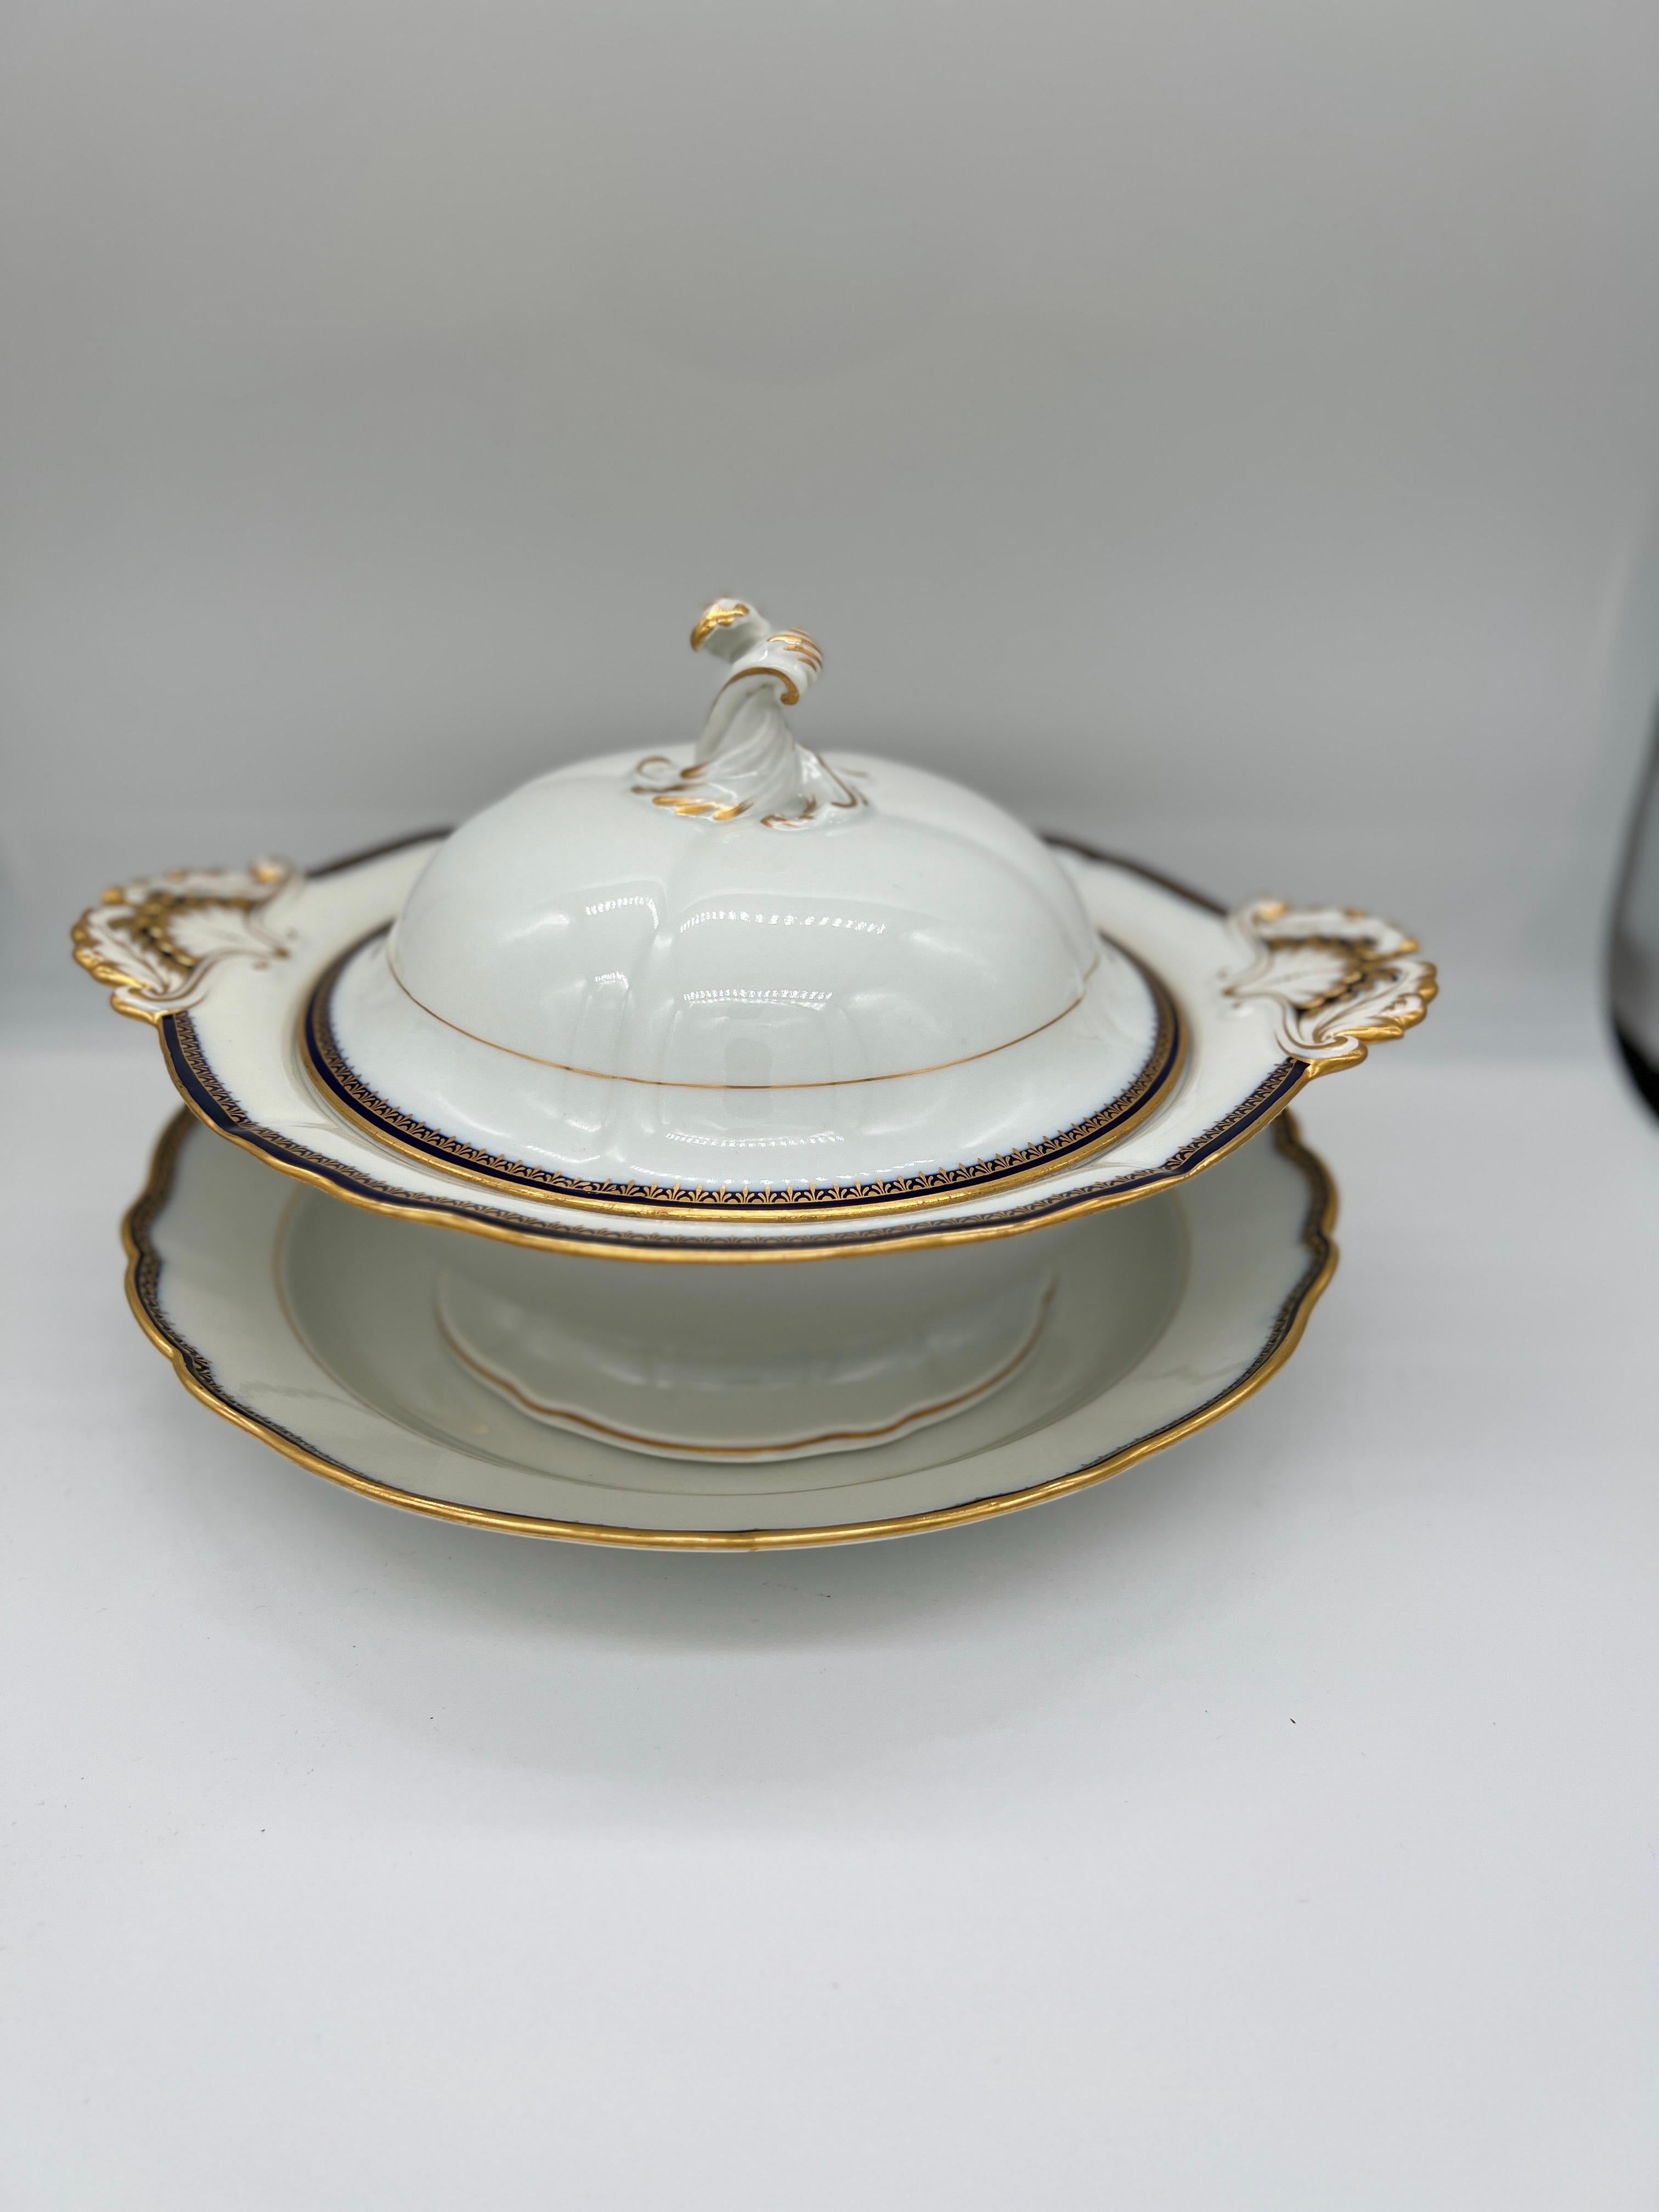 2 pièces, soupière en porcelaine de Meissen décorée d'un bord cobalt et or, sous le plat. 
La soupière est en porcelaine blanche classique et est décorée sur le bord et les accents d'une incrustation de cobalt et de dorure. Les poignées ont une